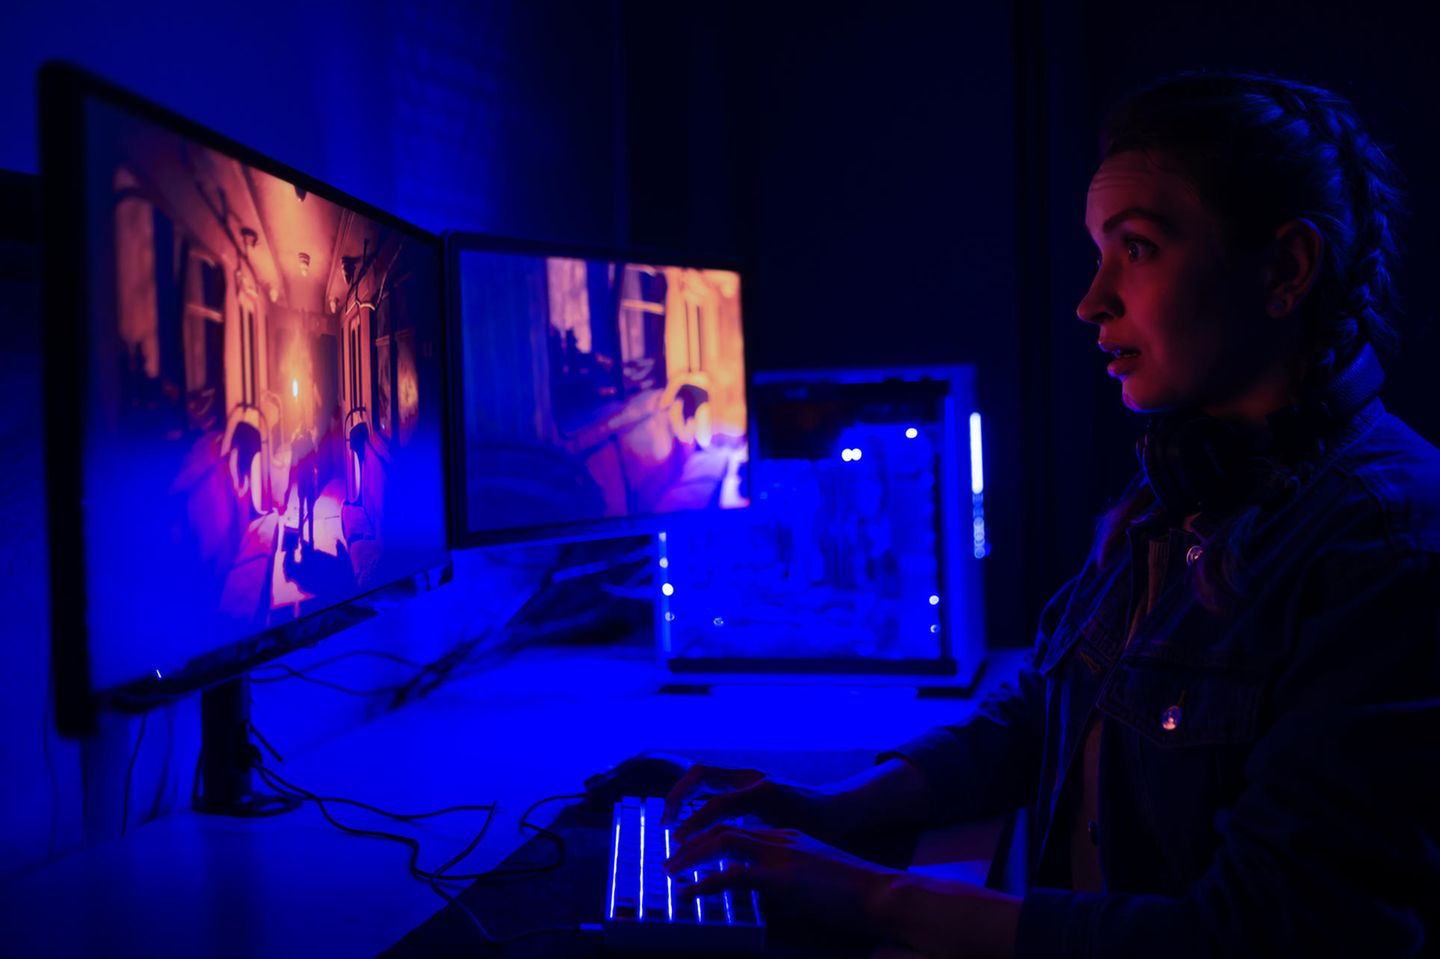 Junge Frau spielt im abgedunkelten Raum Videospiele